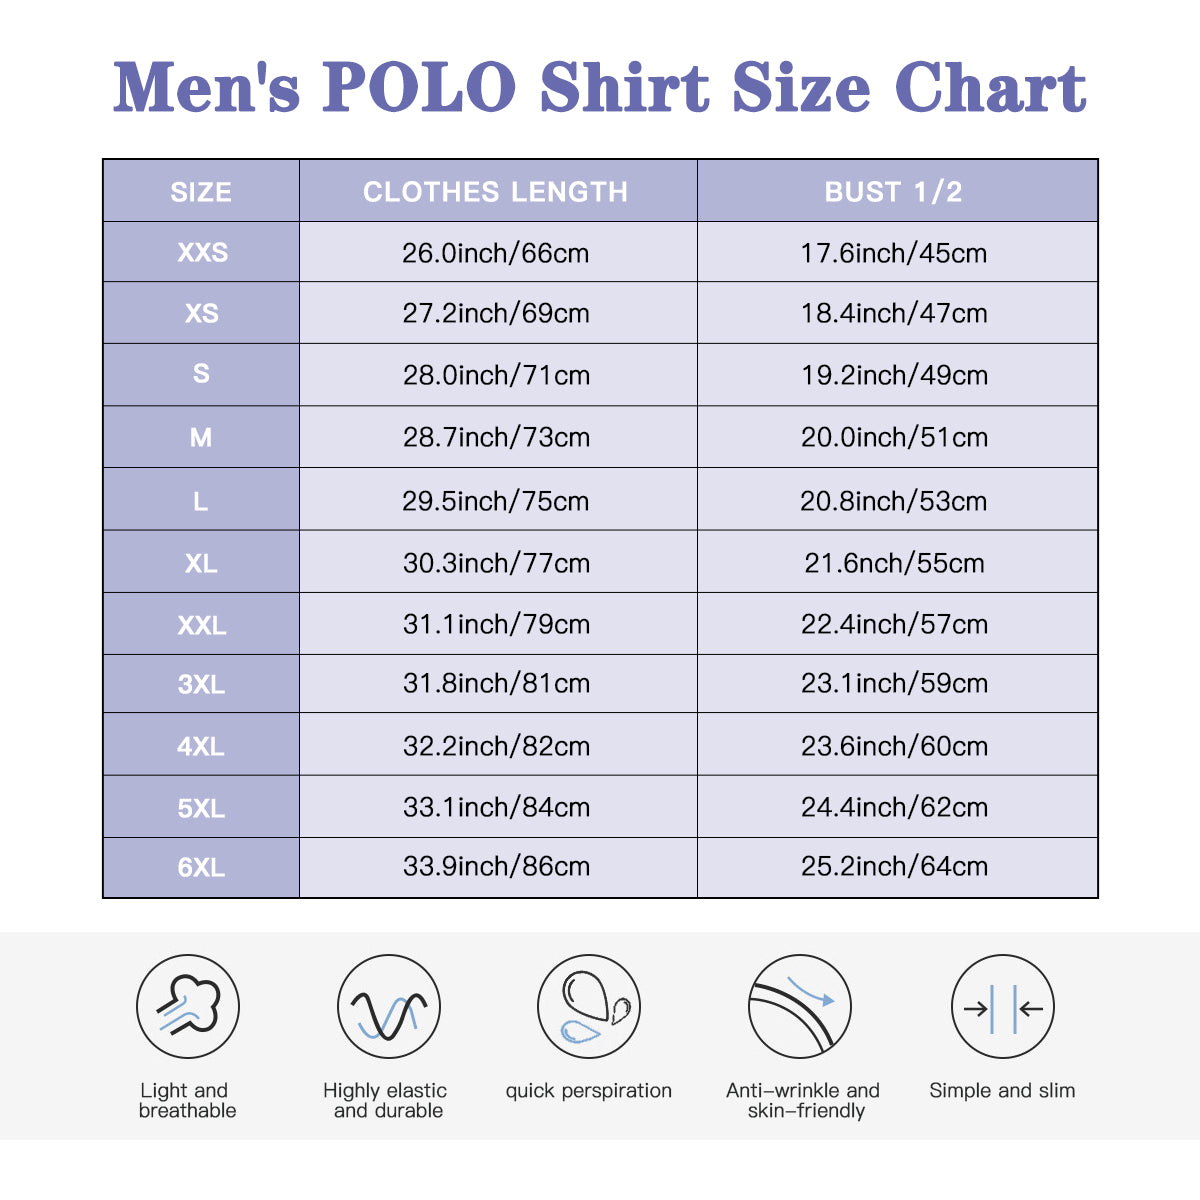 Polo Shirt Men, Retro Shirt Men, 60s style top, Men's polo, Multicolor Stripe Polo, Geometric Polo Shirt,Polo Top Men,Vintage Style Shirt